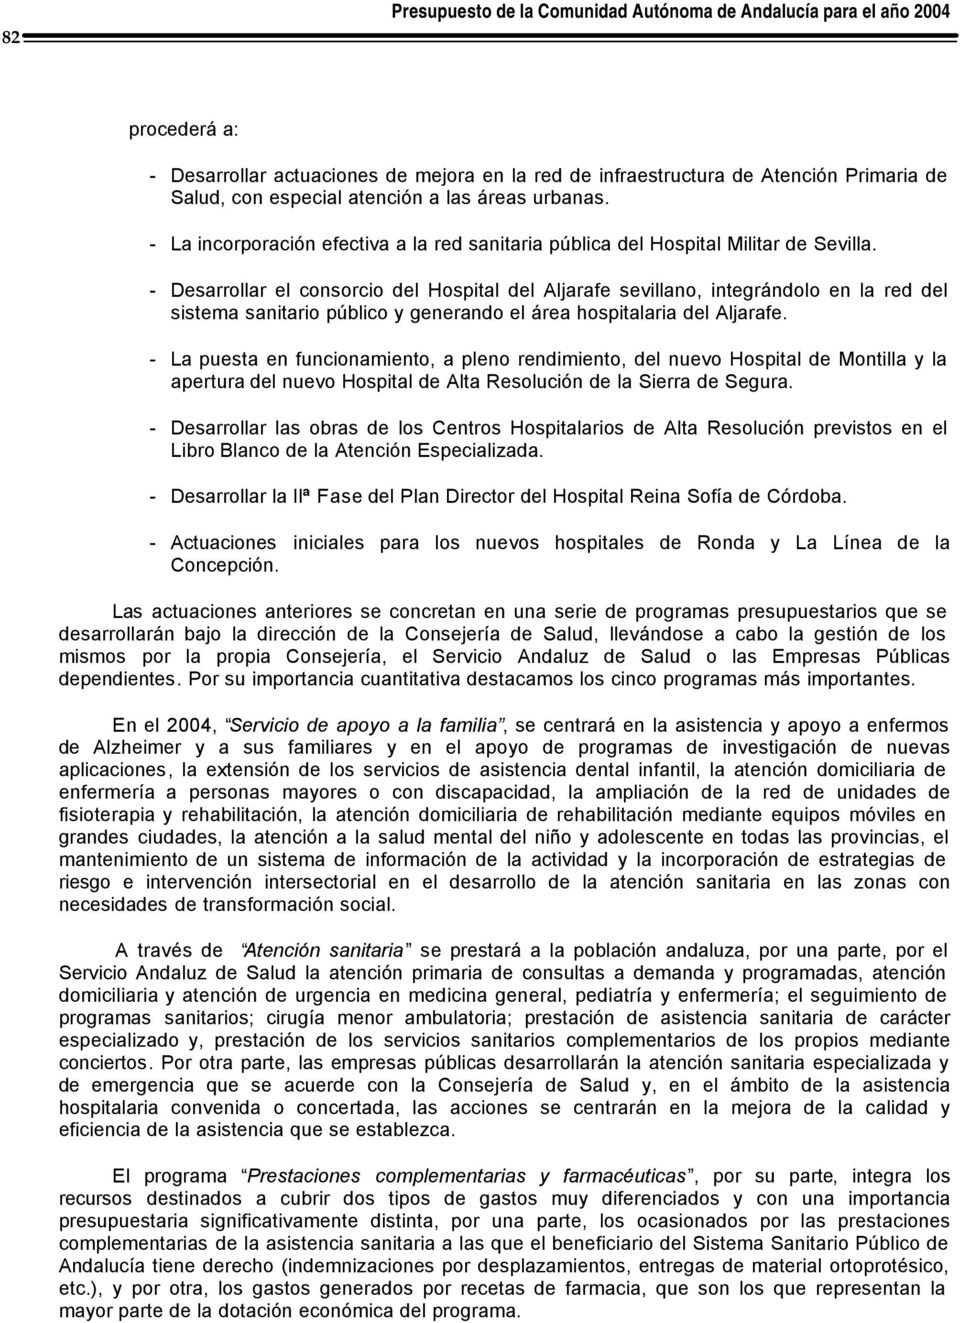 - Desarrollar el consorcio del Hospital del Aljarafe sevillano, integrándolo en la red del sistema sanitario público y generando el área hospitalaria del Aljarafe.